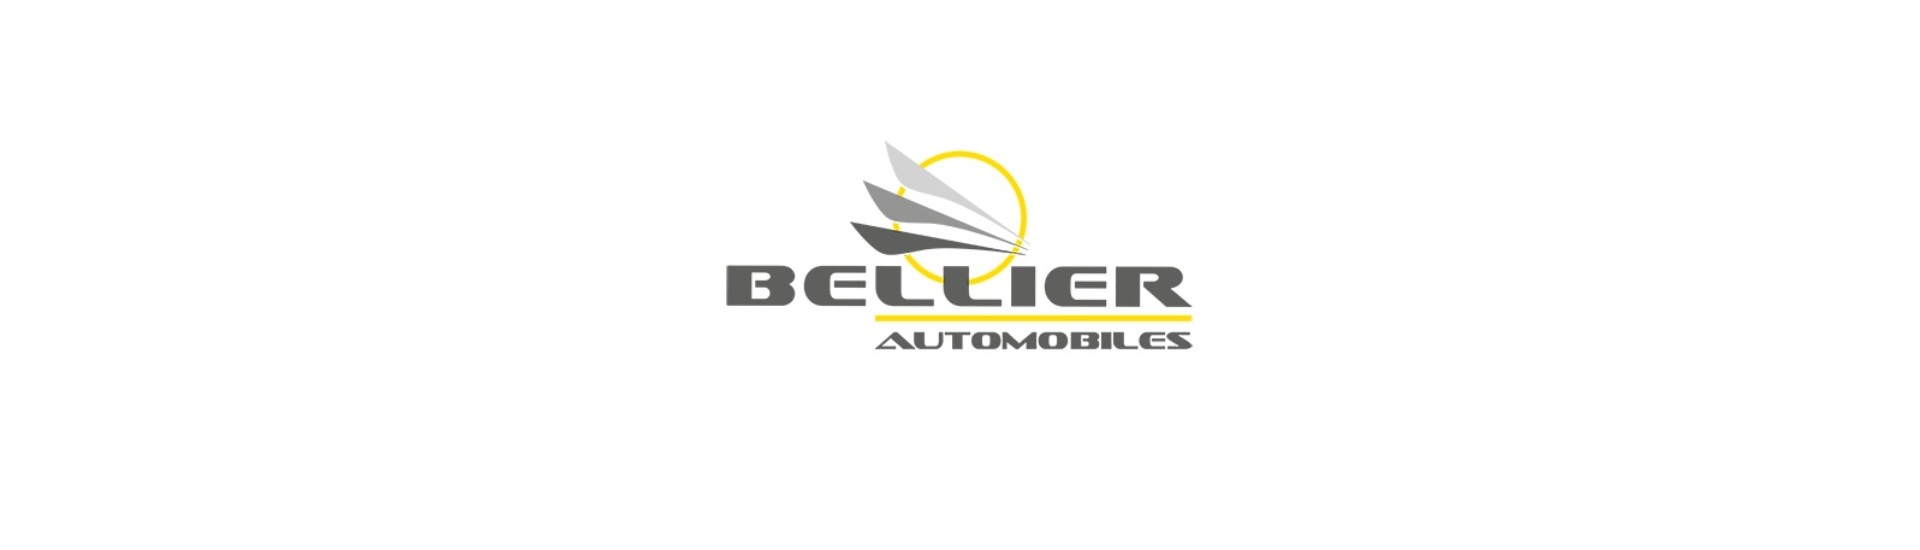 Ulkoinen ovi hoitaa parhaan auton hinnan ilman lisenssiä Bellier